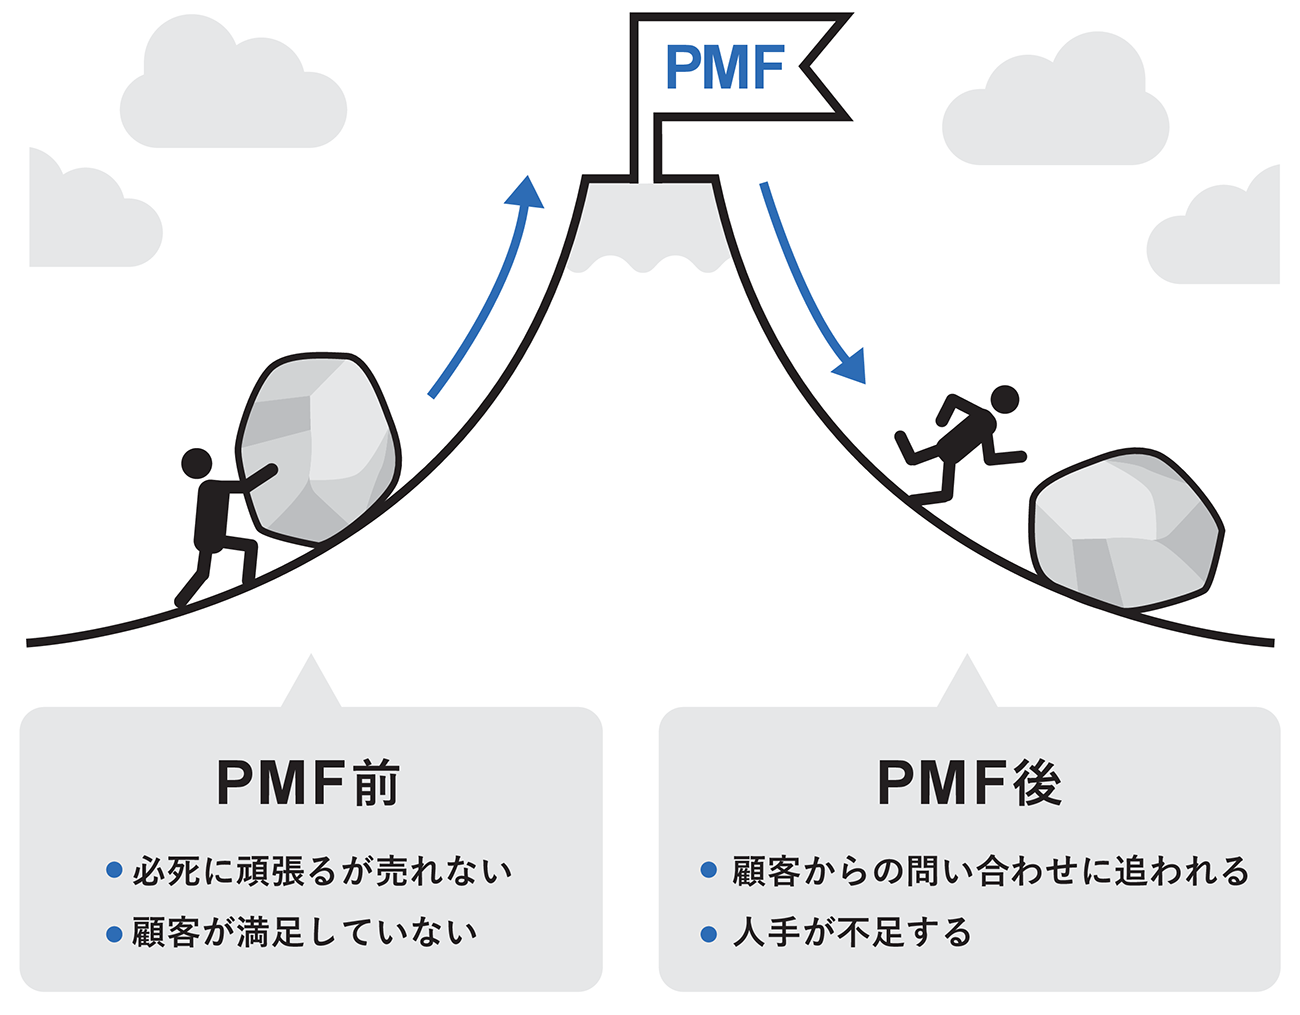 図1-2　PMFの前後の状況の変化